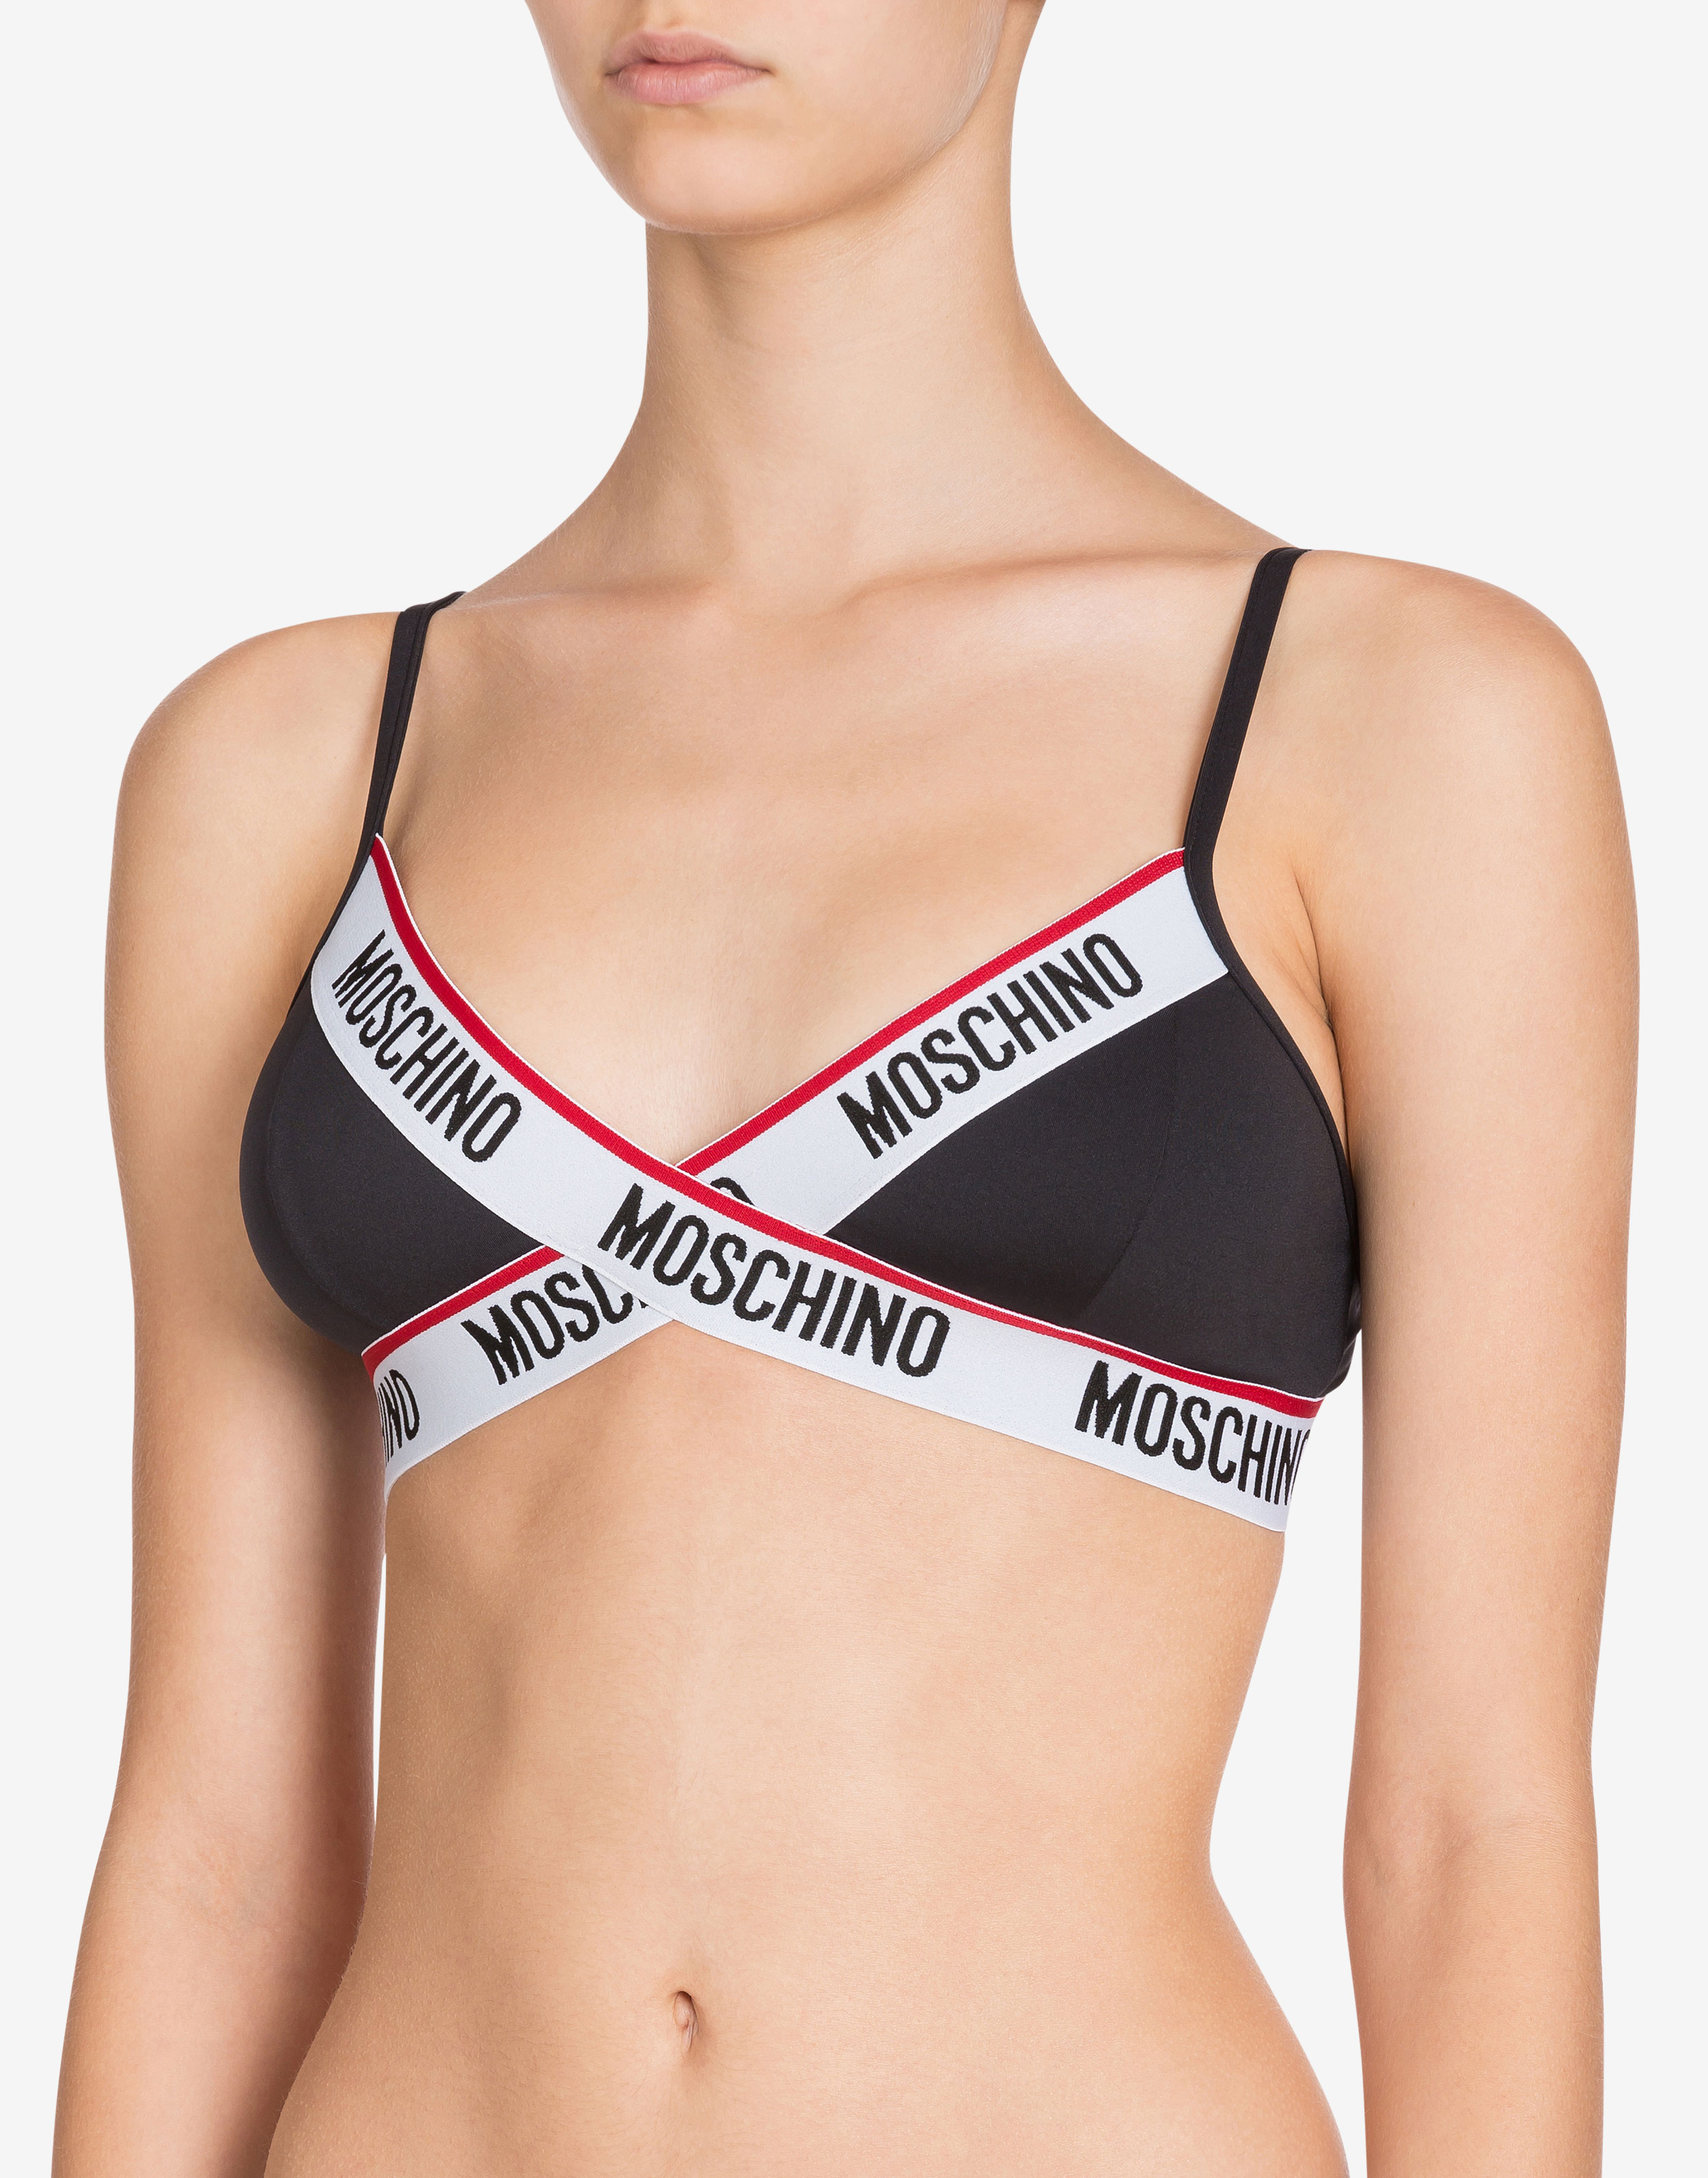 Buy MOSCHINO MOSCHINO Woman's Underwear Body White 2024 Online